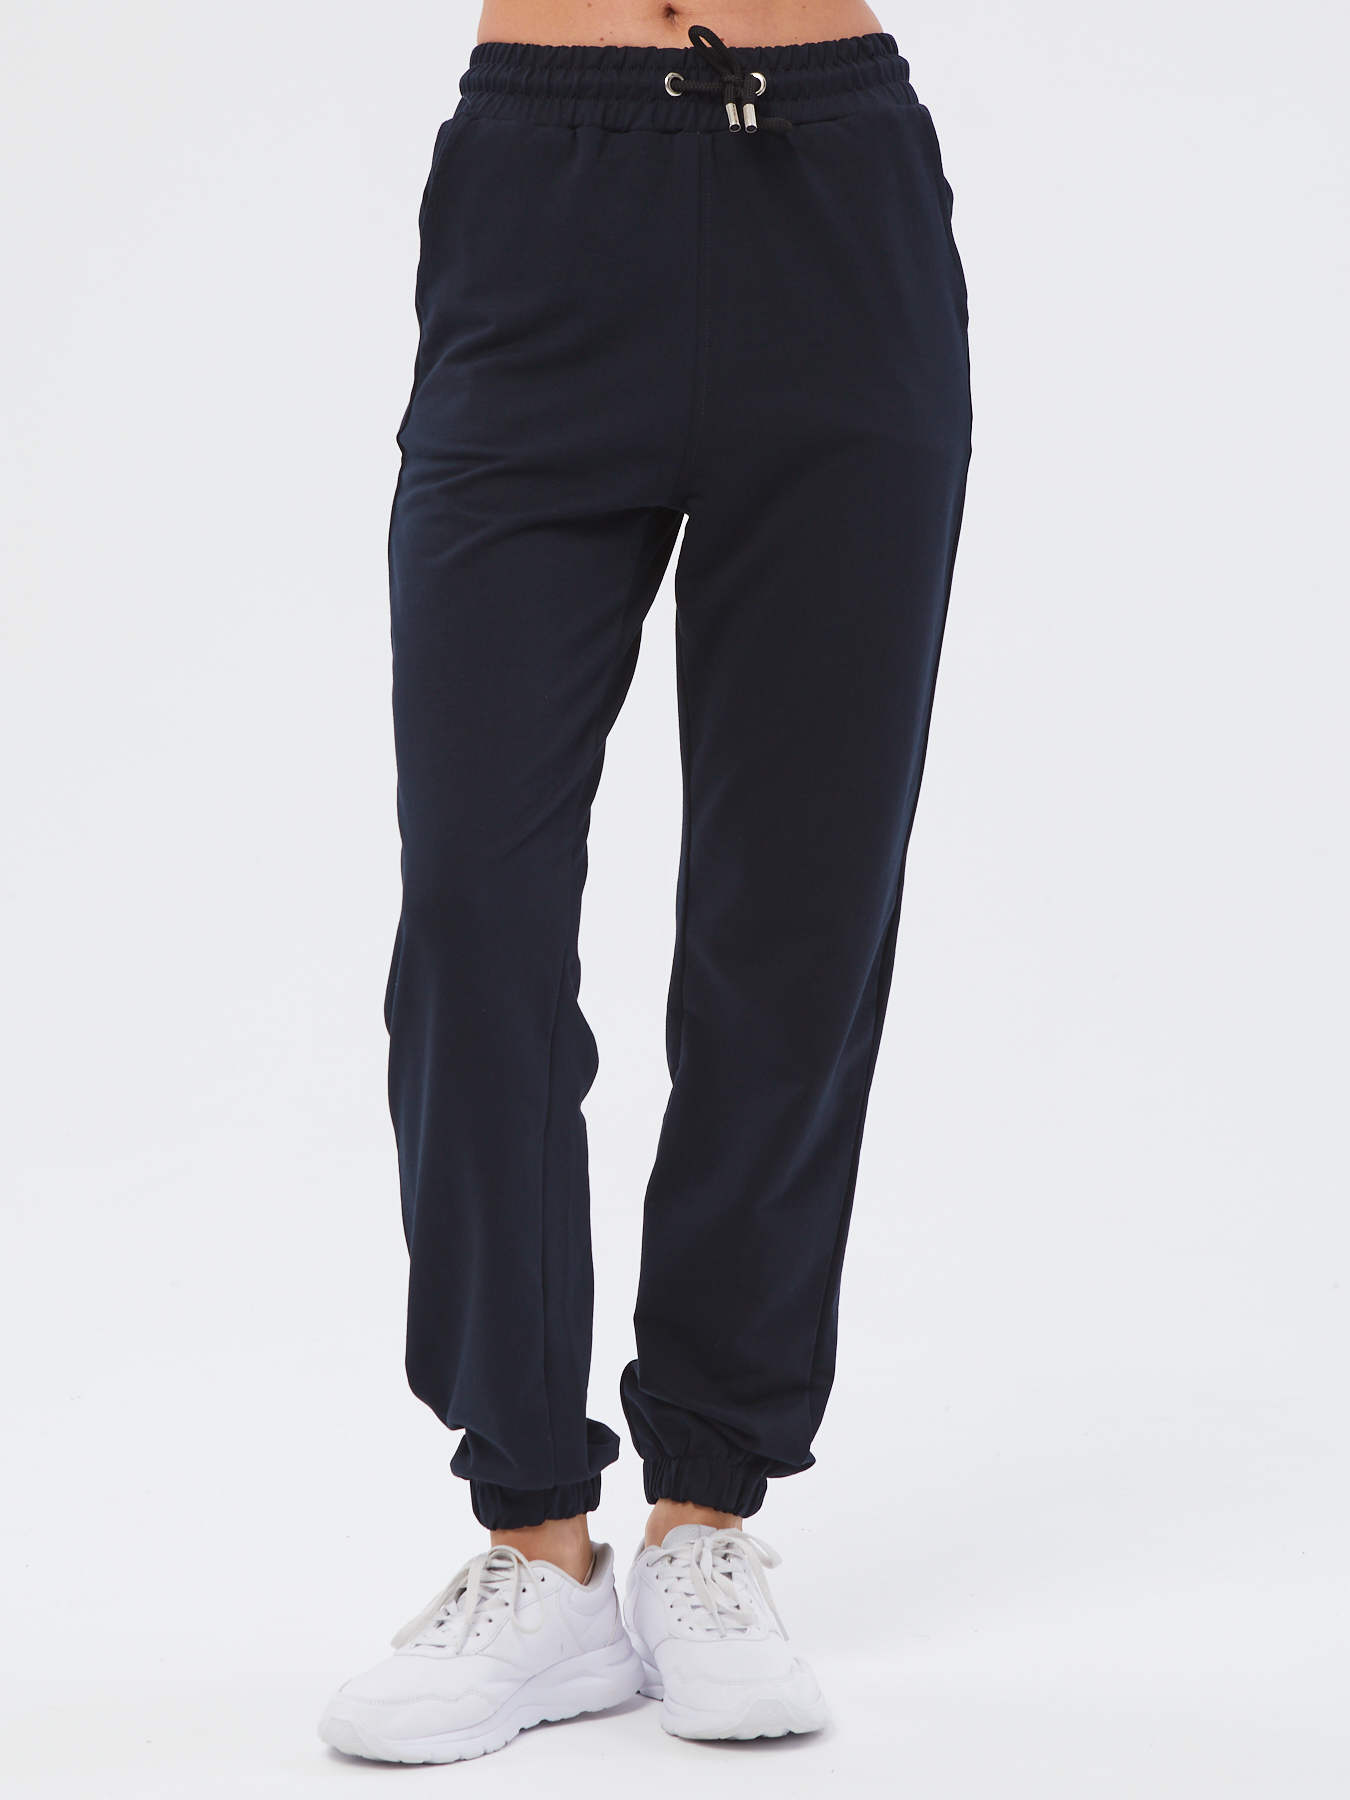 Спортивные брюки женские Still-expert б5 синие 48/150-165